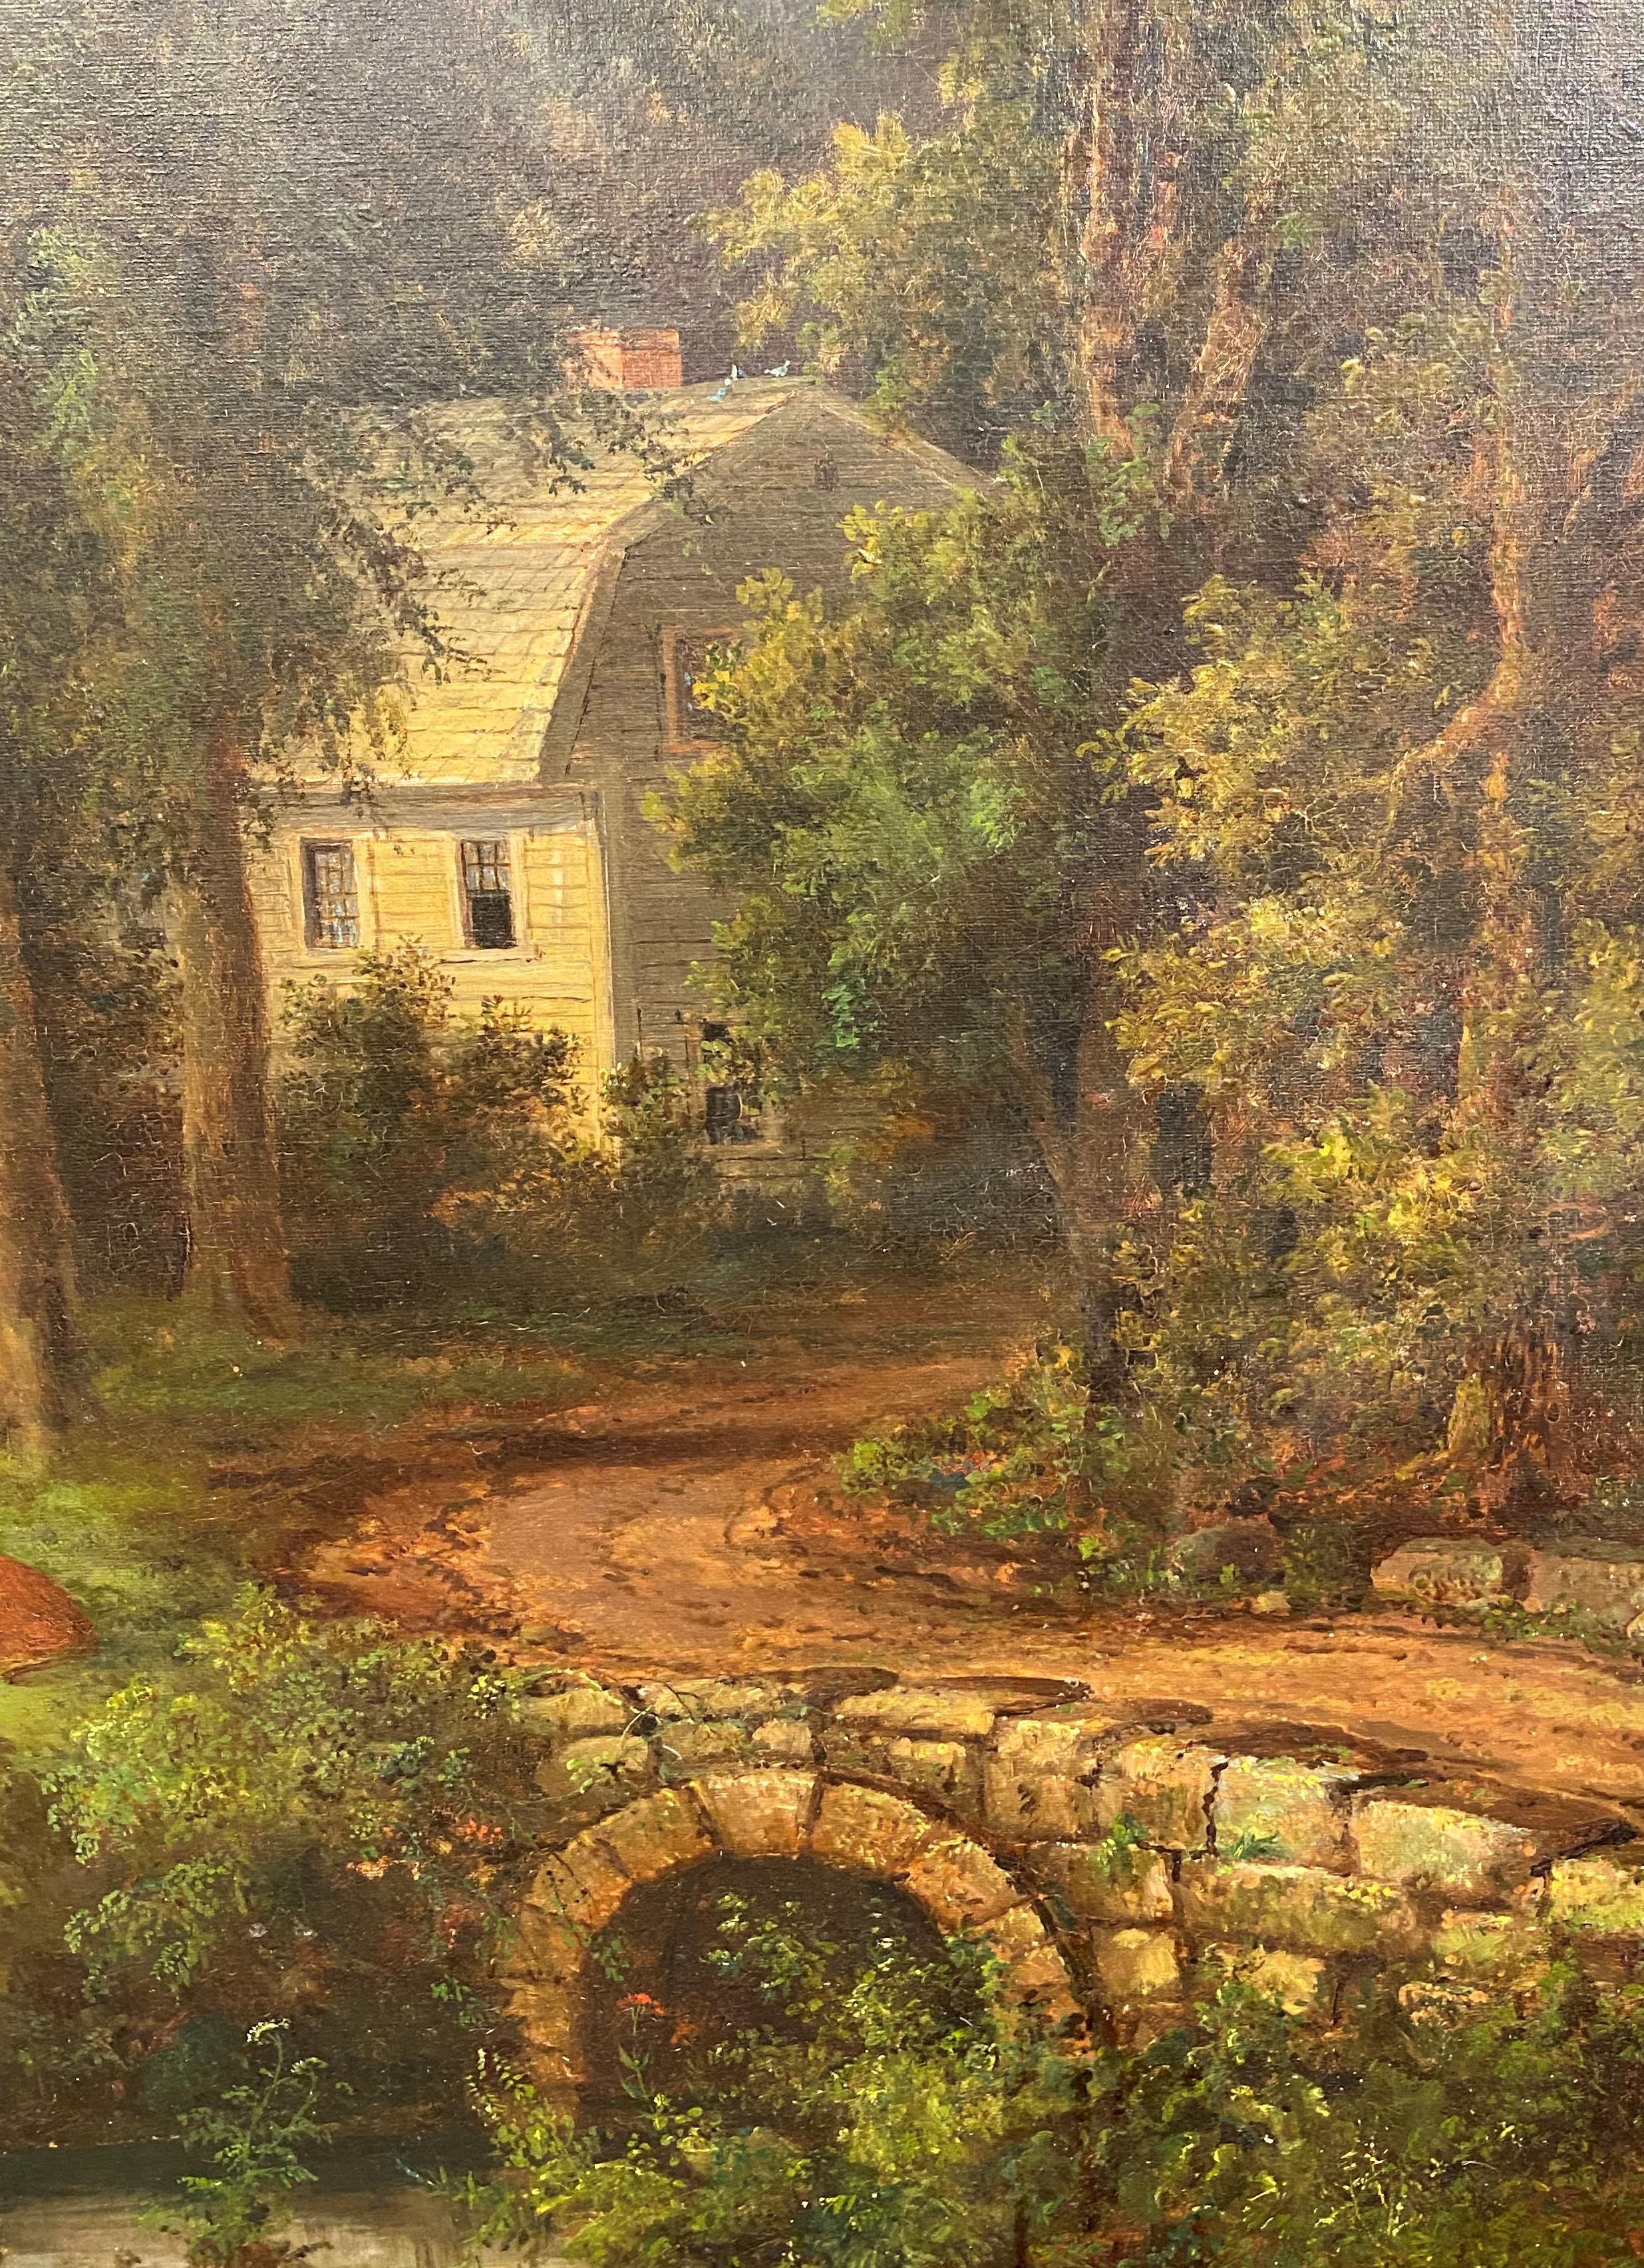 New England Farm - Hudson River School Painting by John White Allen Scott